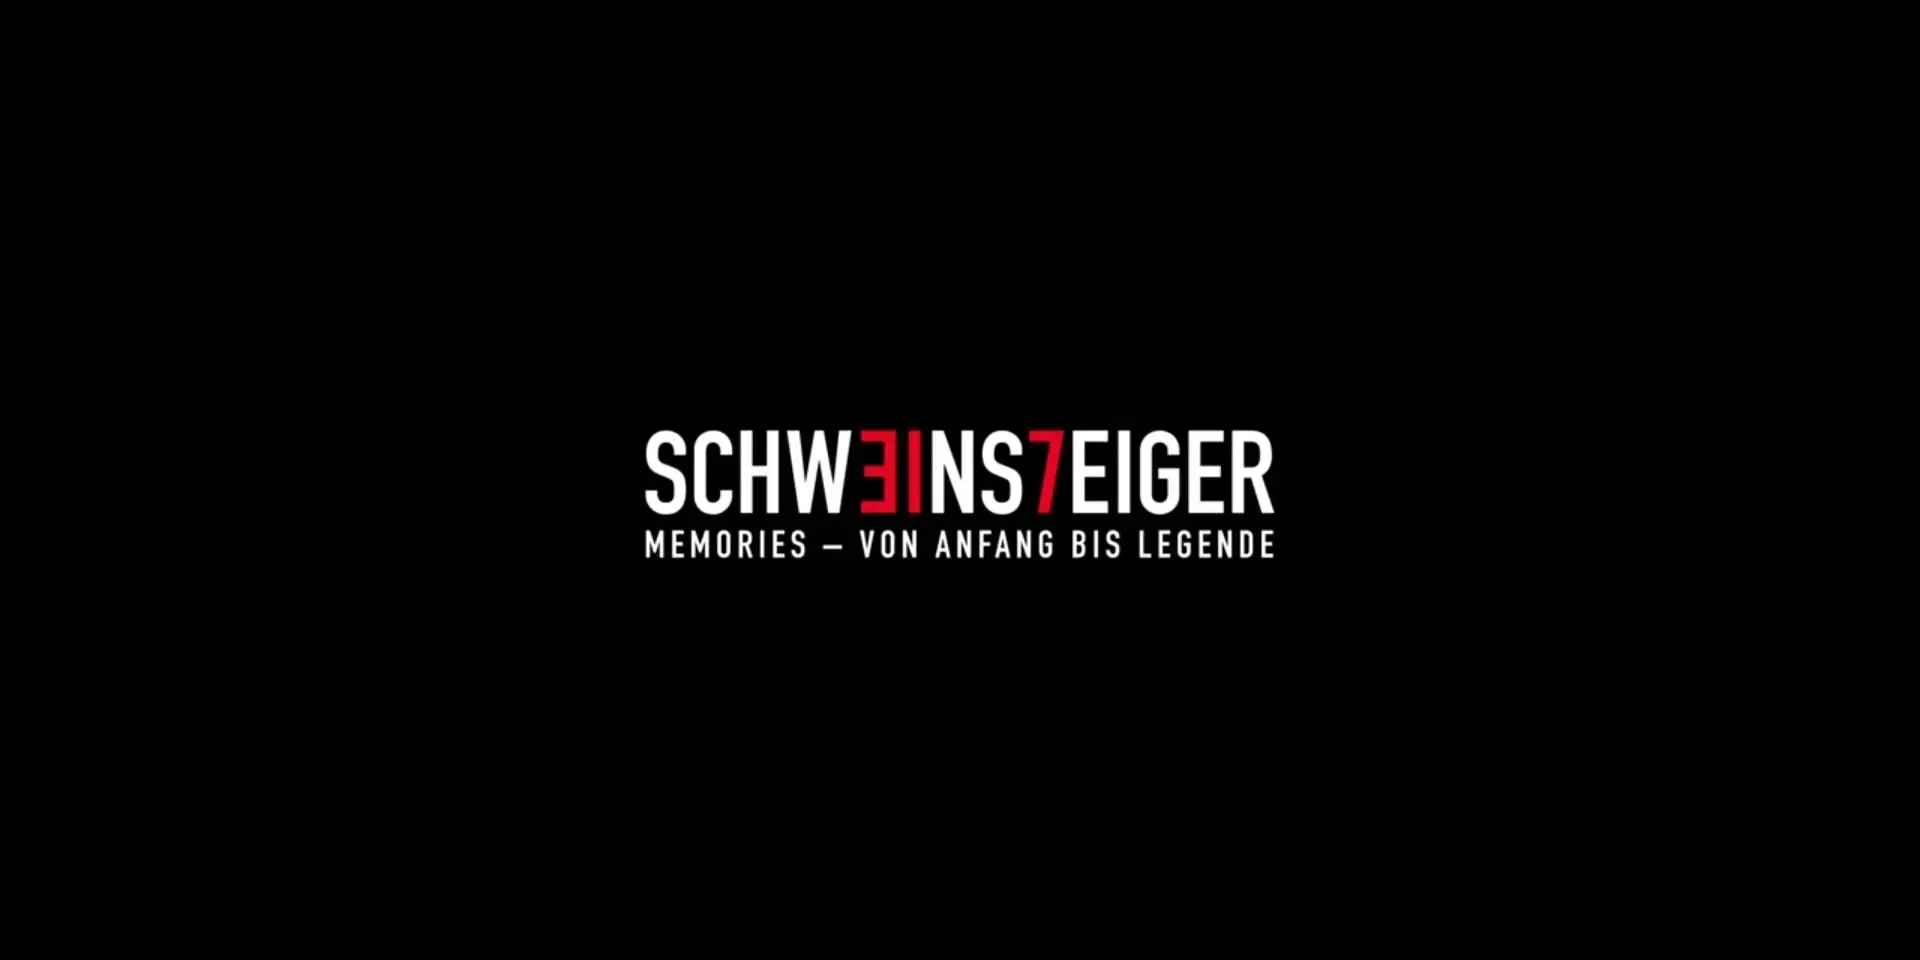 Компания Тиля Швайгера сняла сахарную документалку про Швайнштайгера: ни одной острой темы и вообще нет Лама